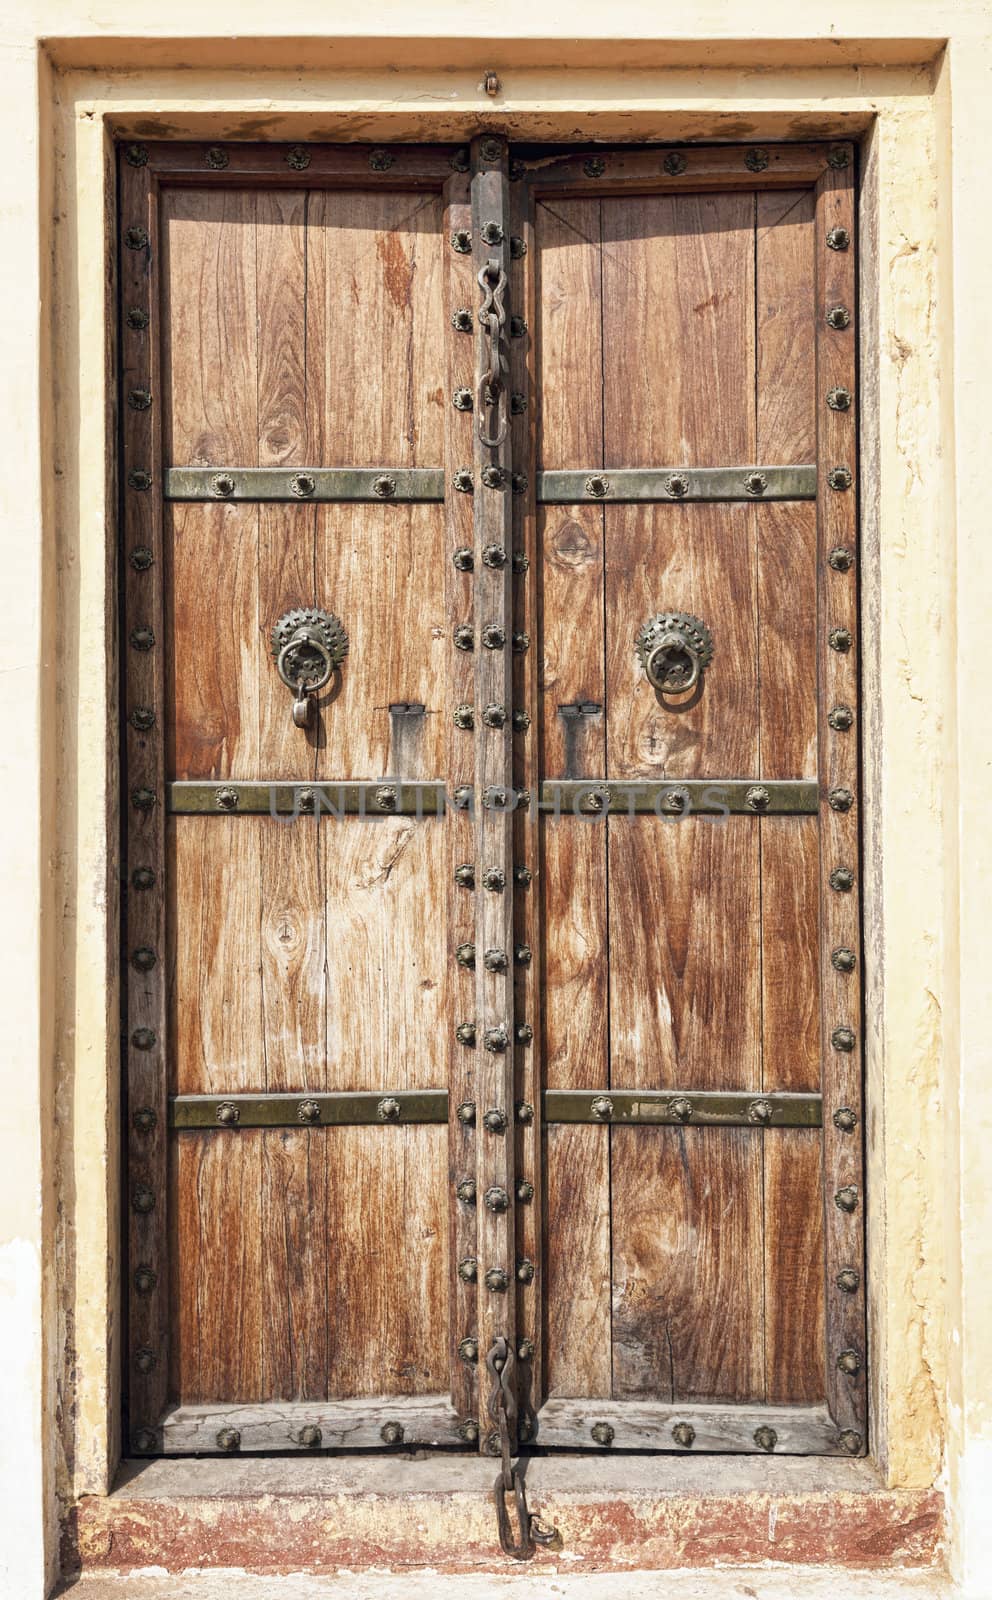 Old wooden door. Rajasthan,India